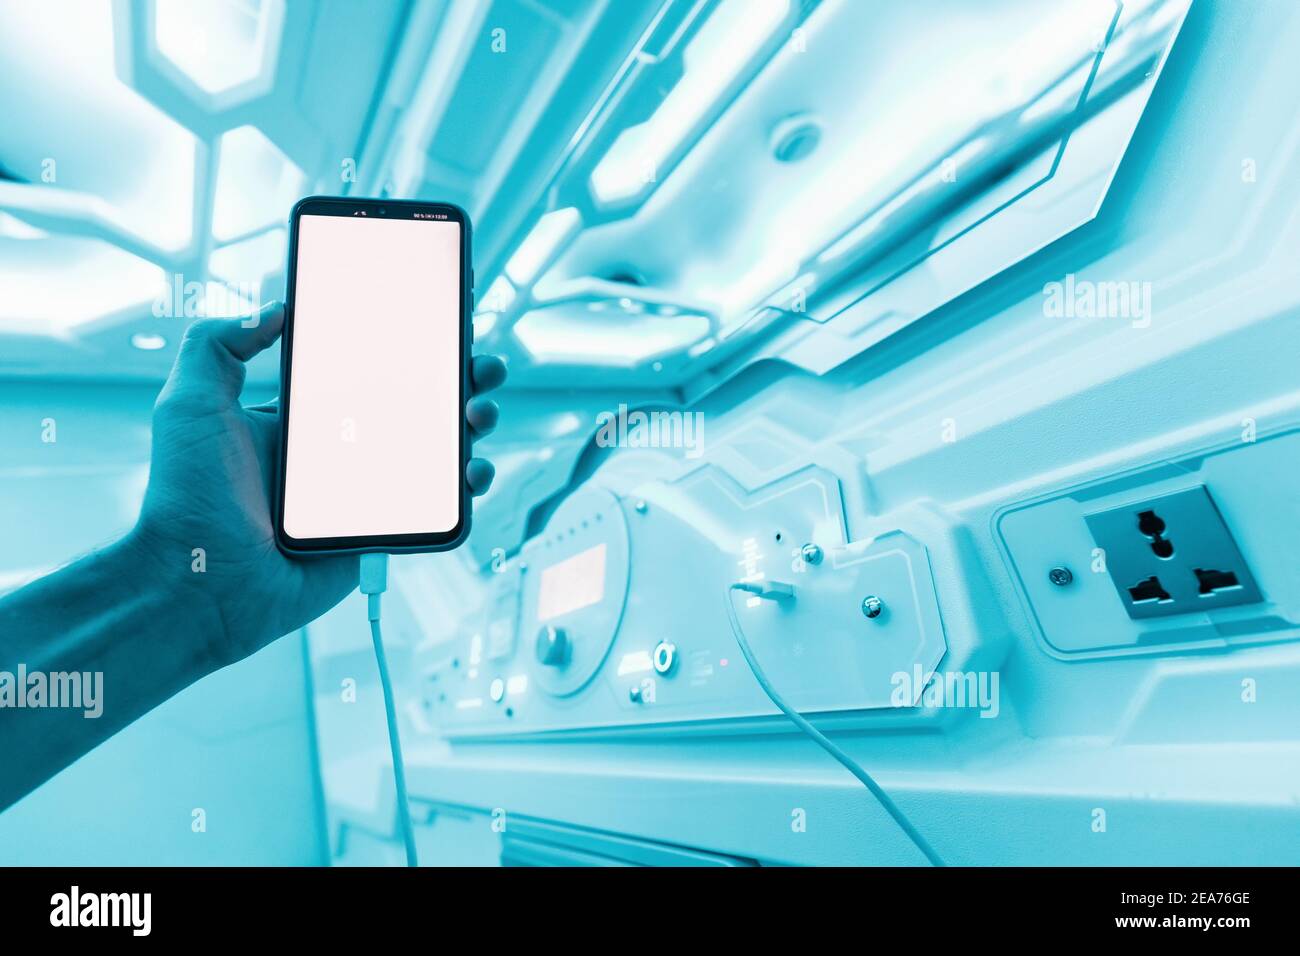 Der Mensch ruht in einem Kapselhotel und liest die Nachrichten in sozialen Netzwerken, bevor er zu Bett geht. Sci-Fi Raumschiff Innenraum in Neon und UV-Farben Stockfoto